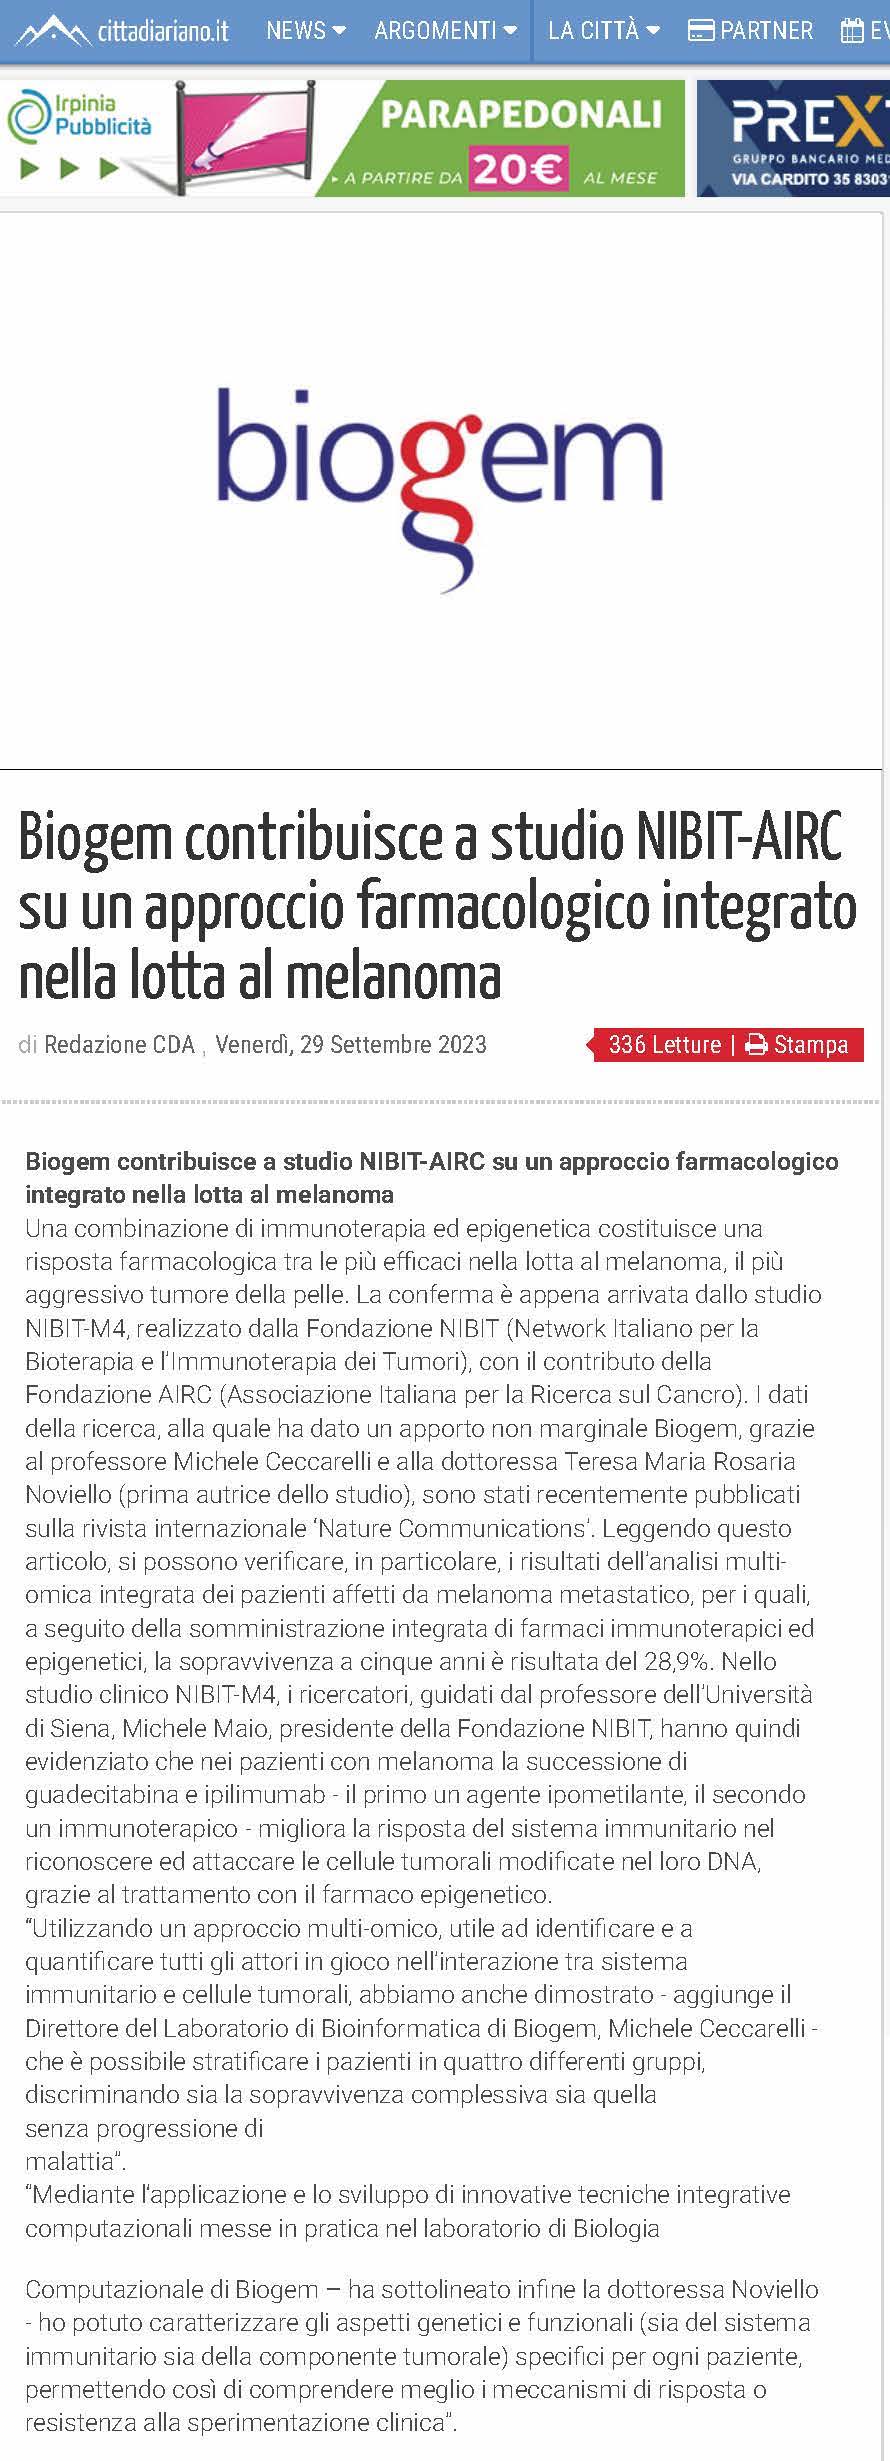 Biogem contribuisce a studio NIBIT-AIRC su un approccio farmacologico integrato nella lotta al melanoma